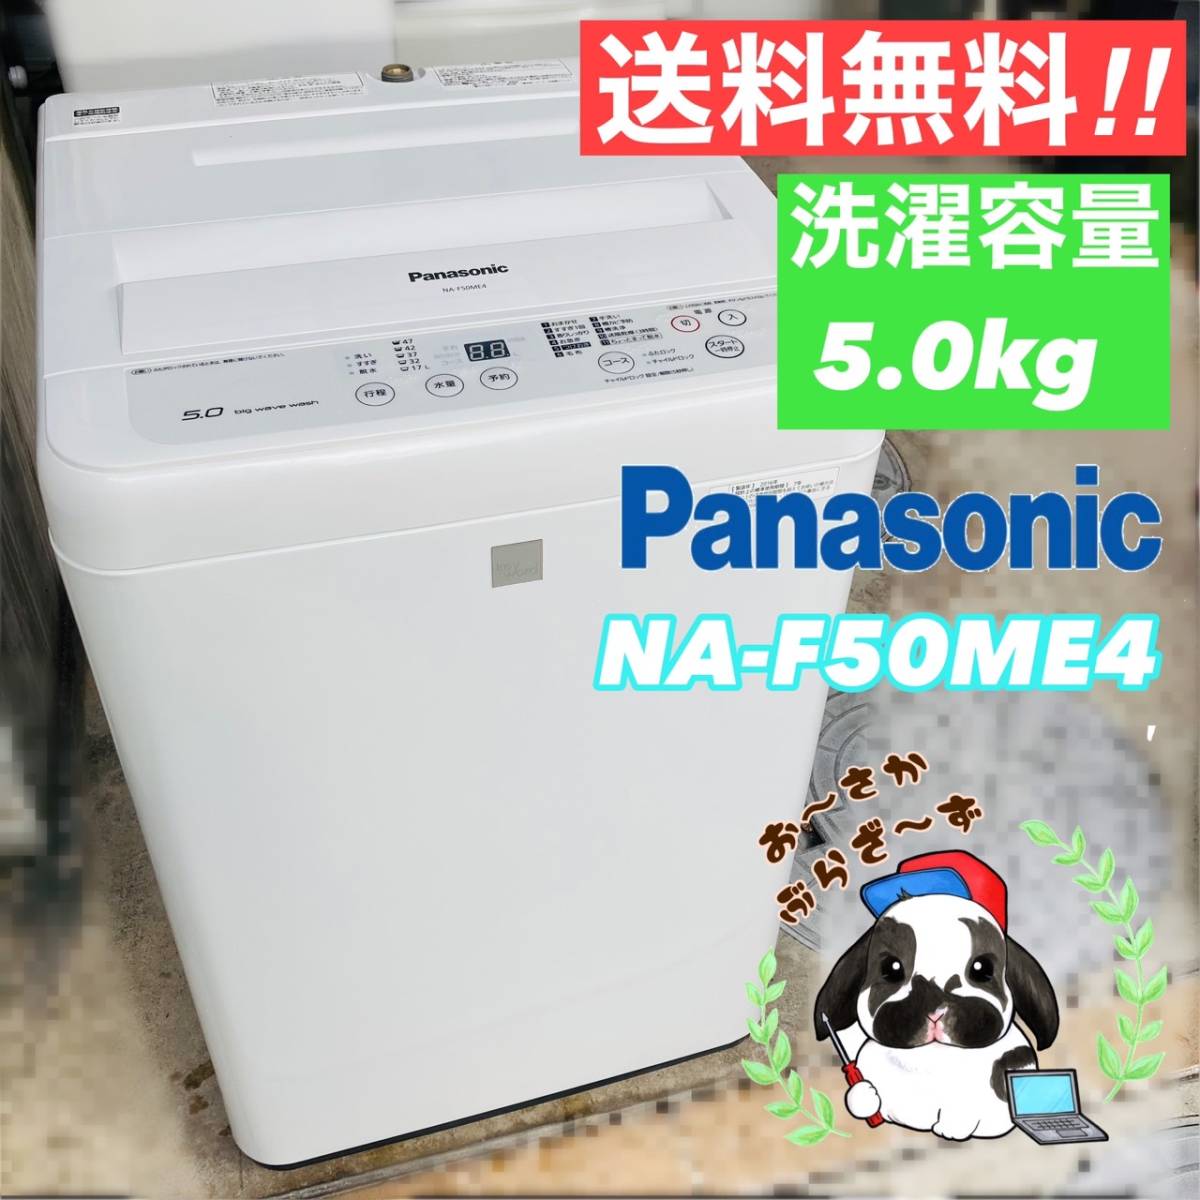 結婚祝い 送料無料!!Panasonic パナソニック 5.0kg 全自動洗濯機 NA